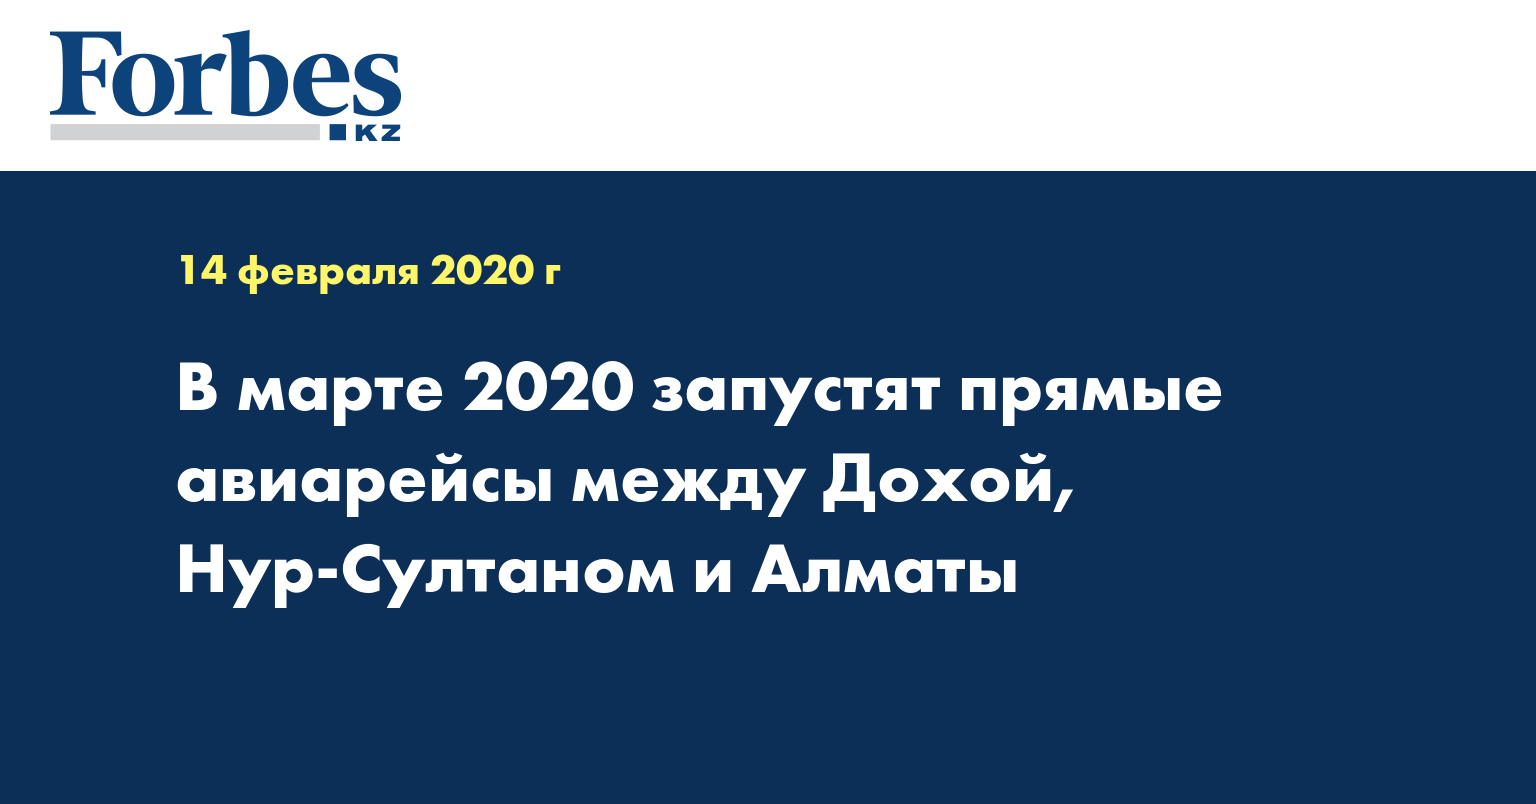  В марте 2020 запустят прямые авиарейсы между Дохой, Нур-Султаном и Алматы